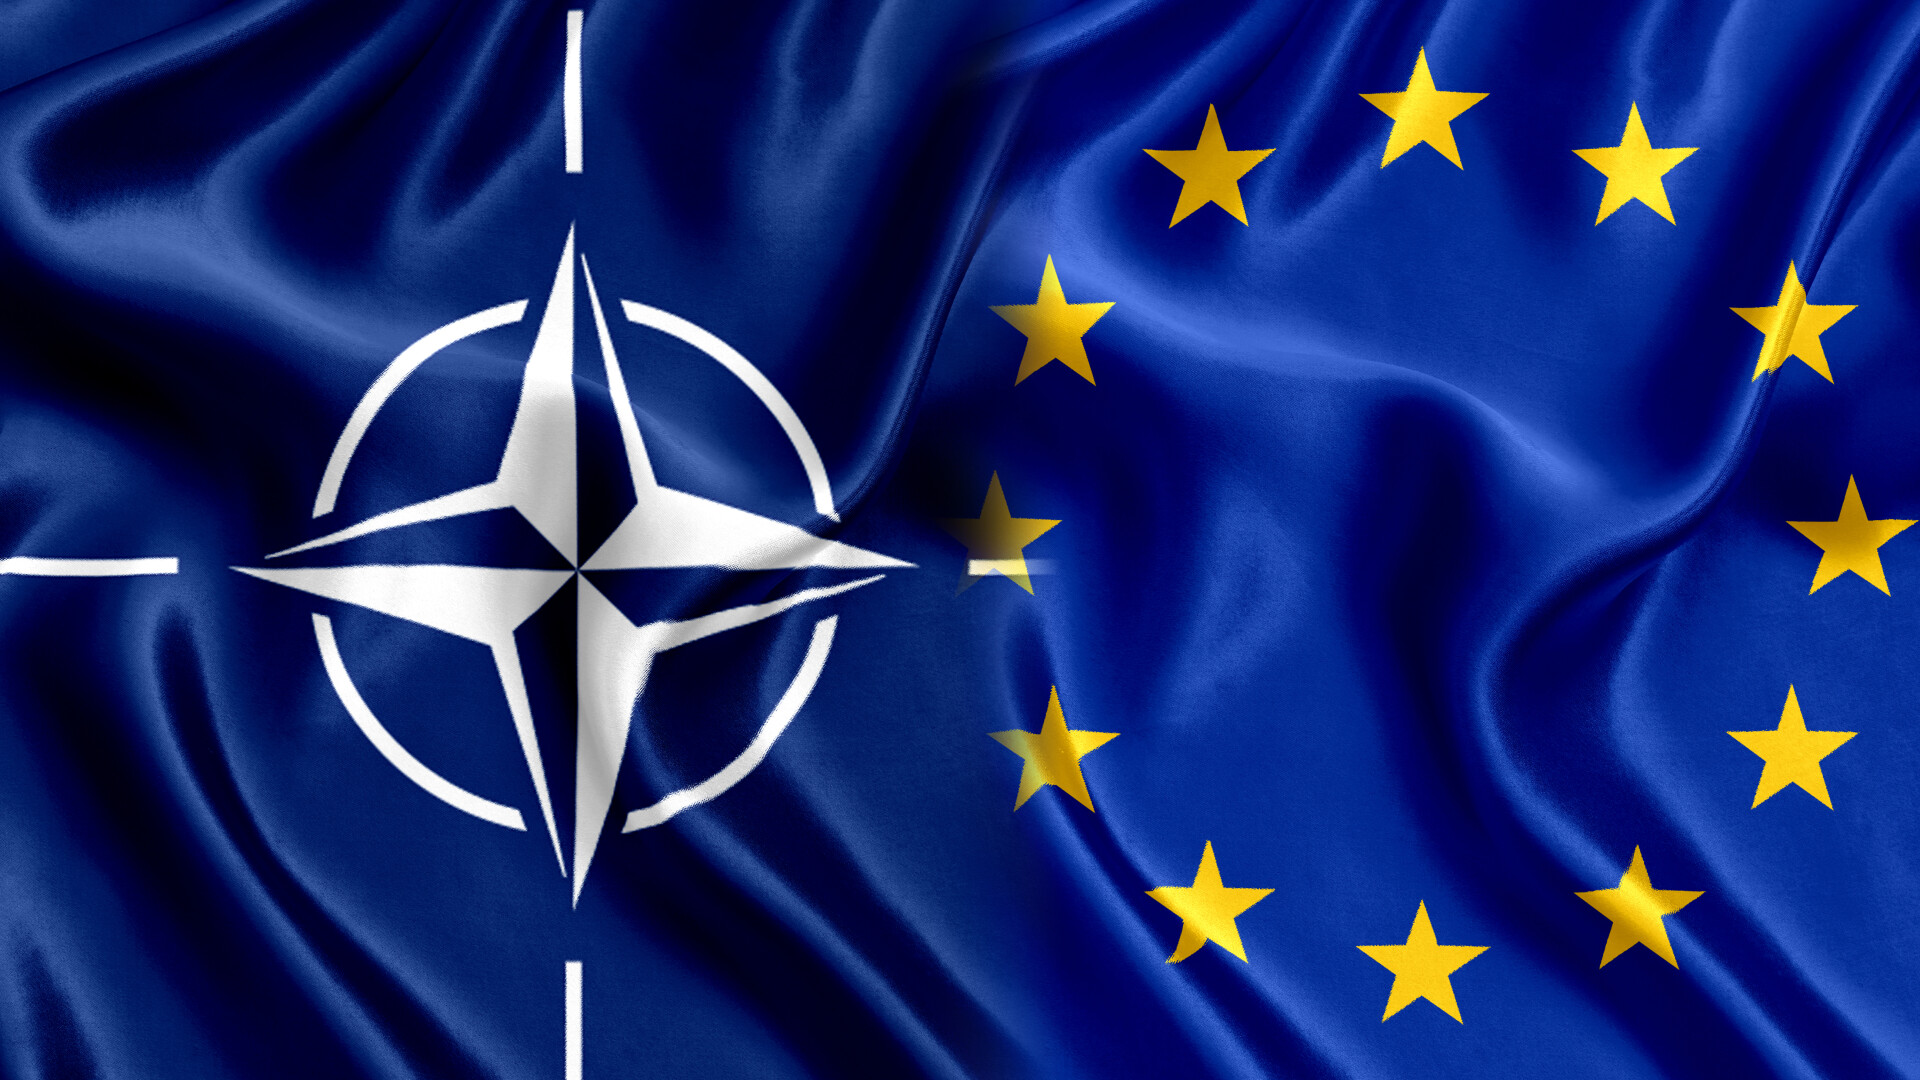 Ministru rus: Acţiunile SUA şi NATO în Europa contribuie la creşterea ameninţării militare